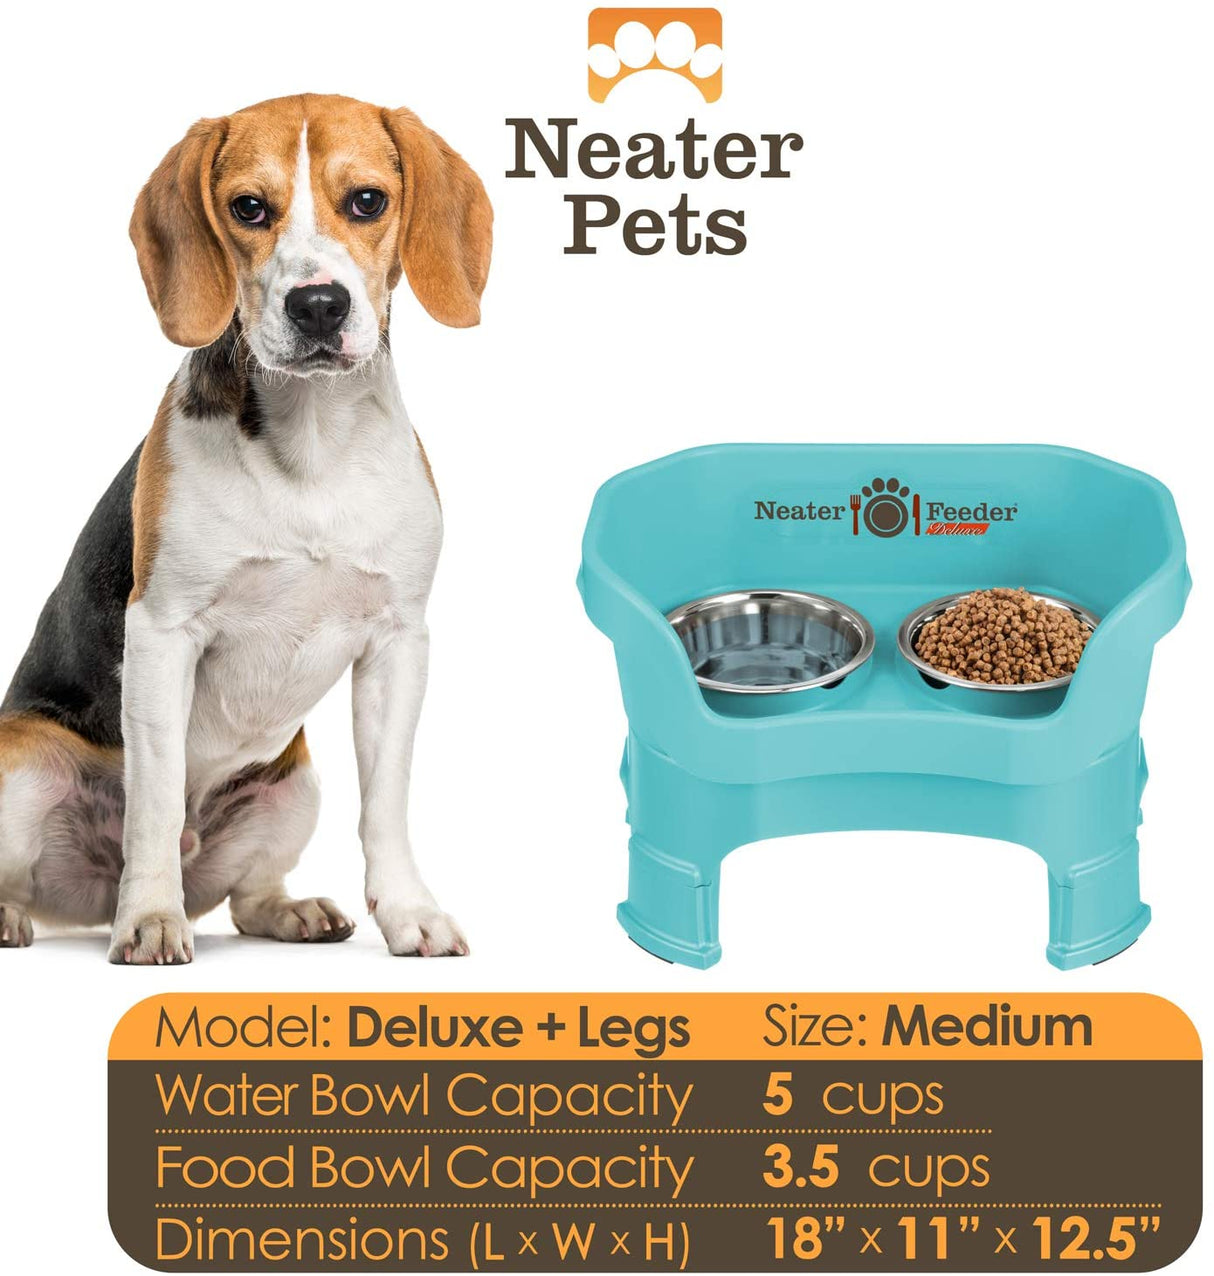 Medium dog bowl capacity and dimensions